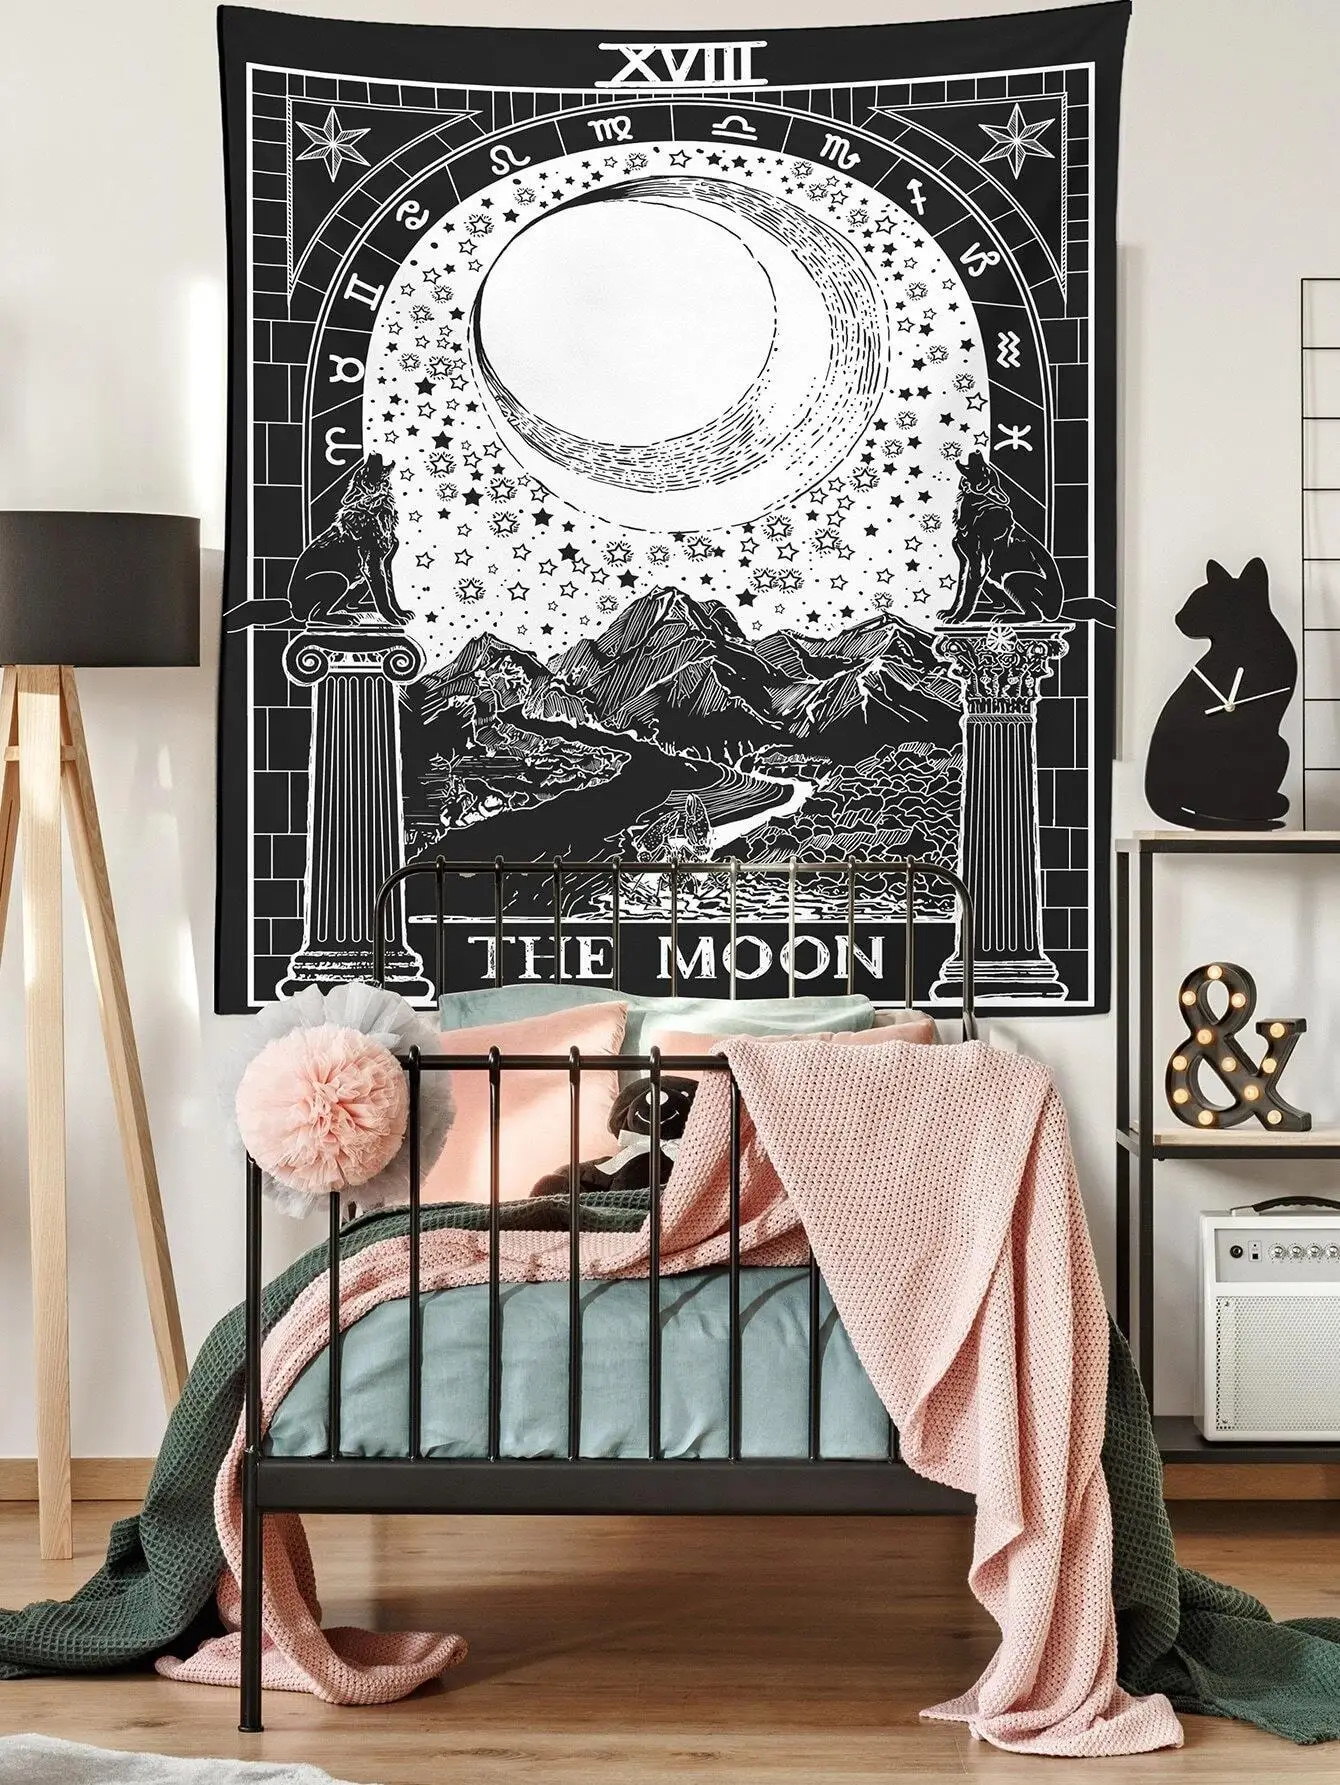 

Колдовство Таро гобелен настенный гобелен Луна горная стена гобелен хиппи Спальня Гостиная Декор Бохо художественный ковер